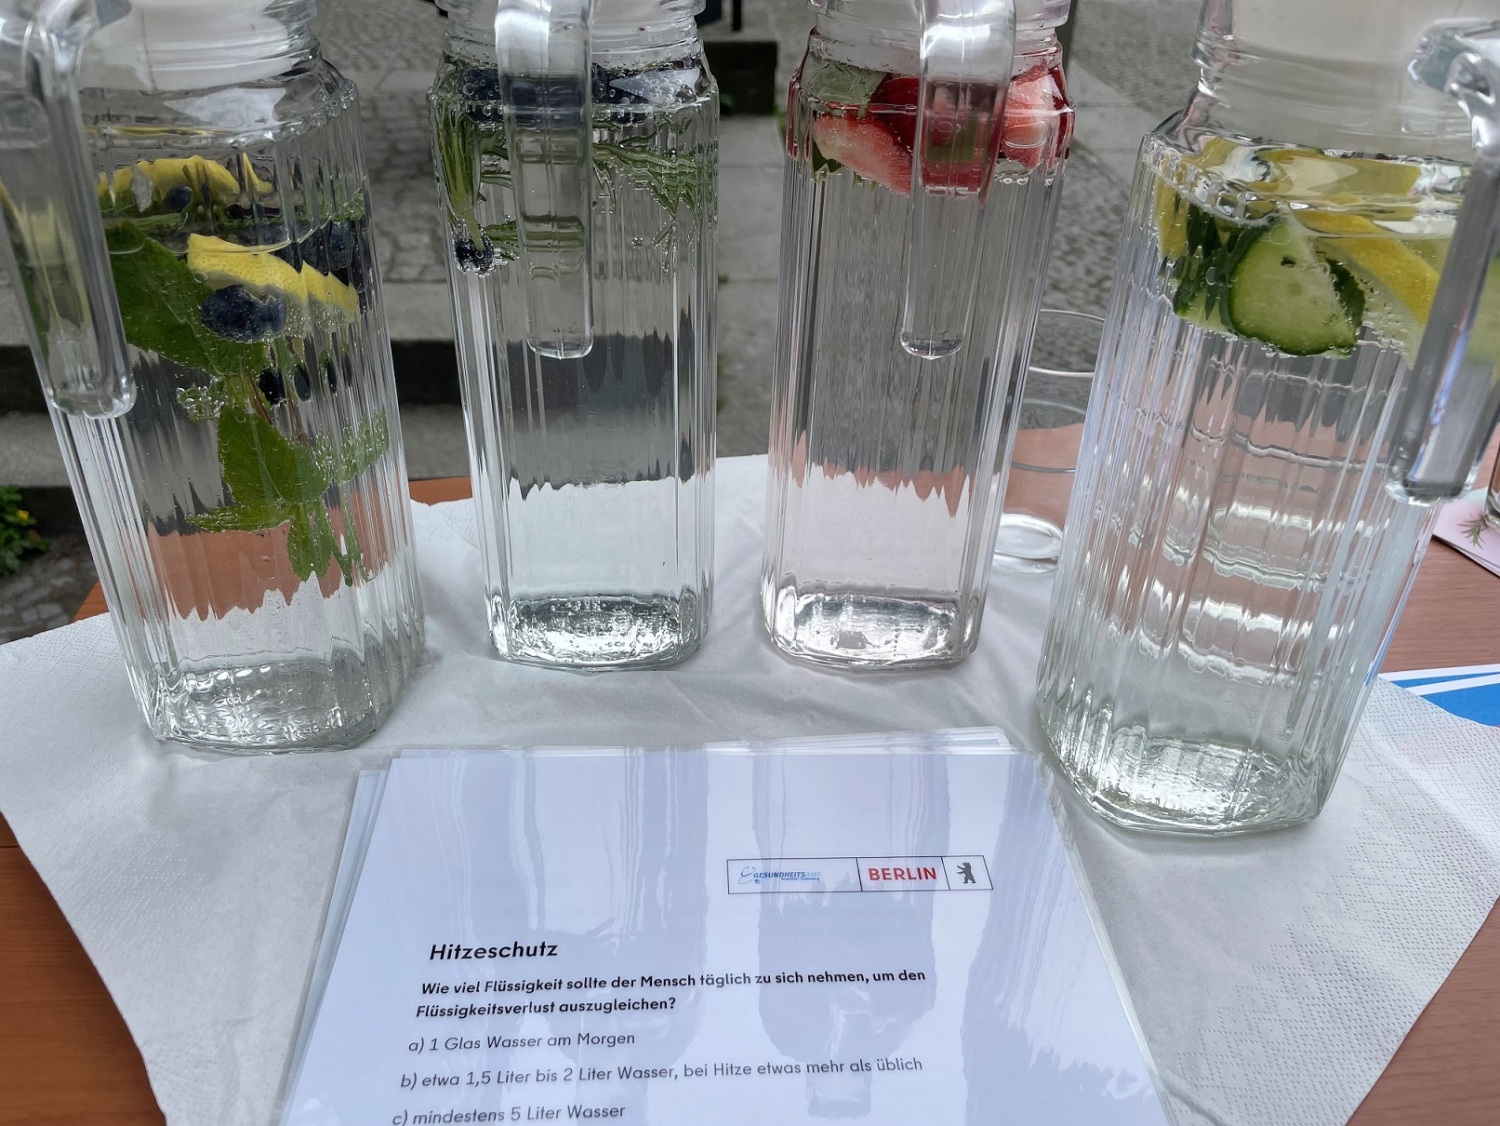 Auf einem kleinen Stand stehen vier Glaskaraffen mit Wasser und Früchten und ein laminiertes Quiz zum Thema Hitzeschutz.